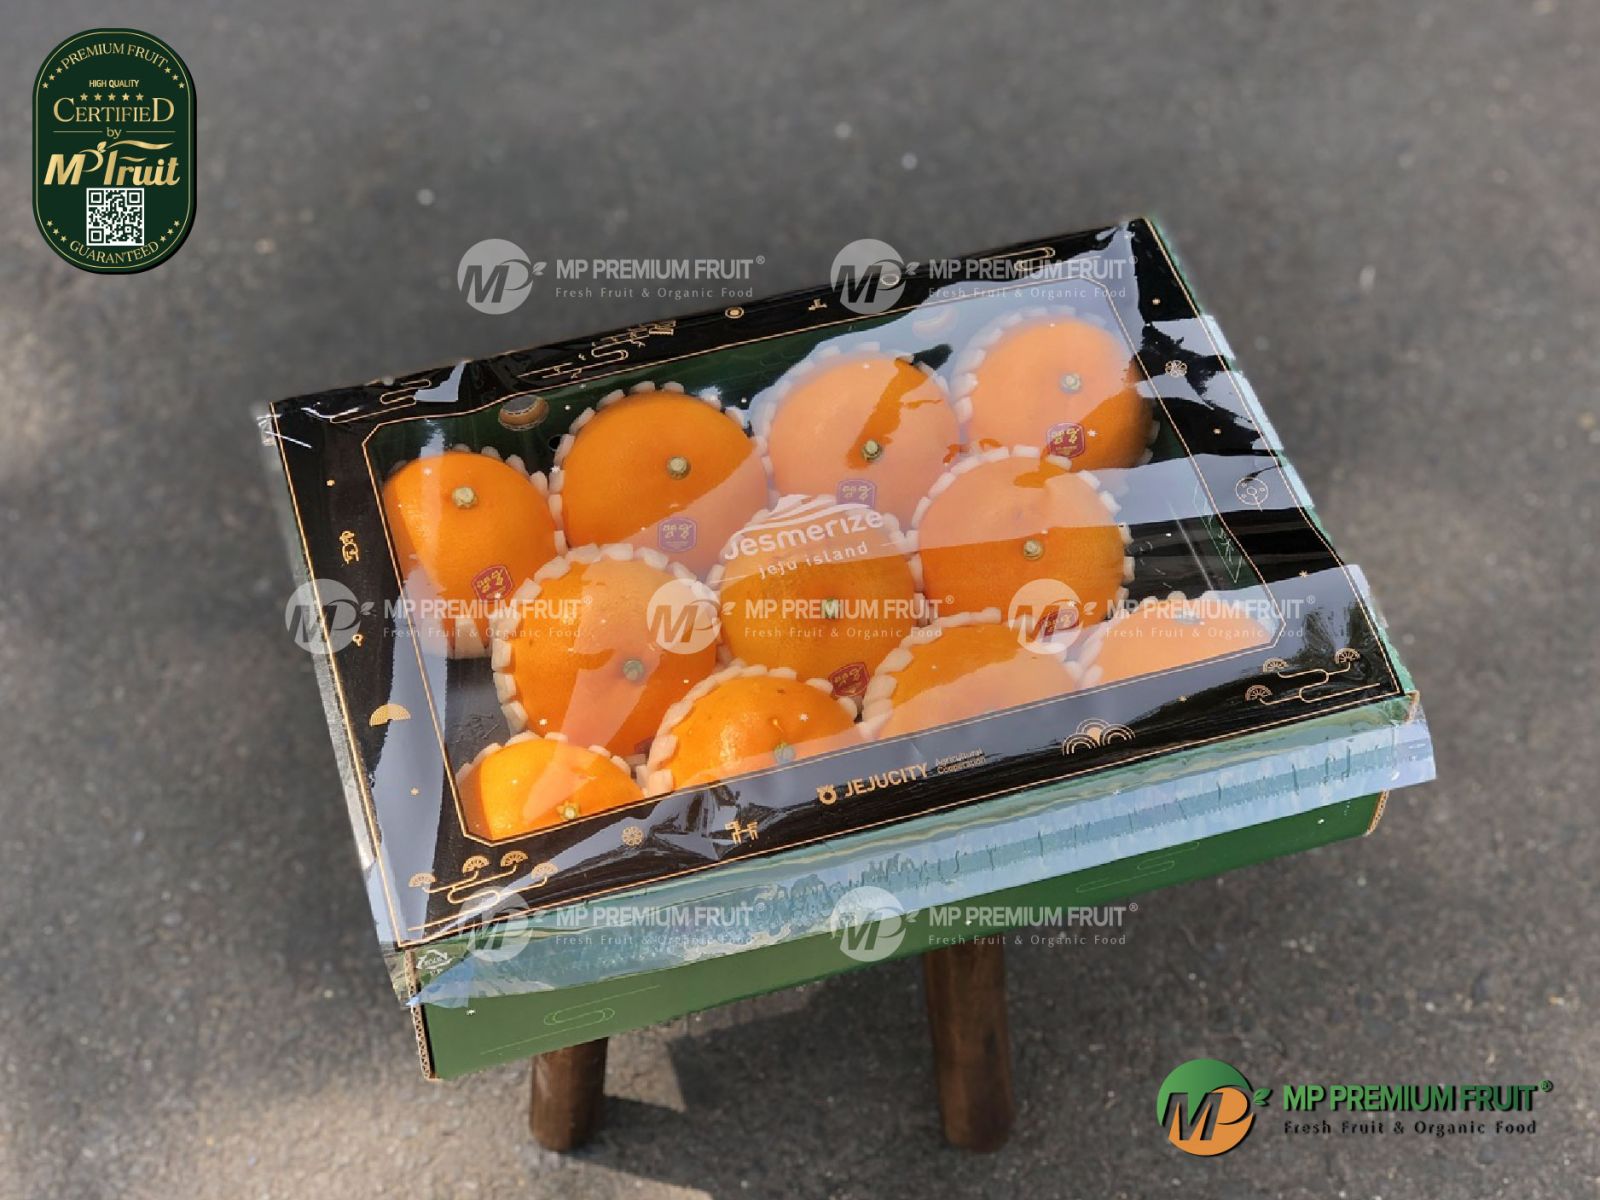 Quýt Jeju Cheonhyehyang Hàn Quốc - Hộp 3kg tại MP Fruit